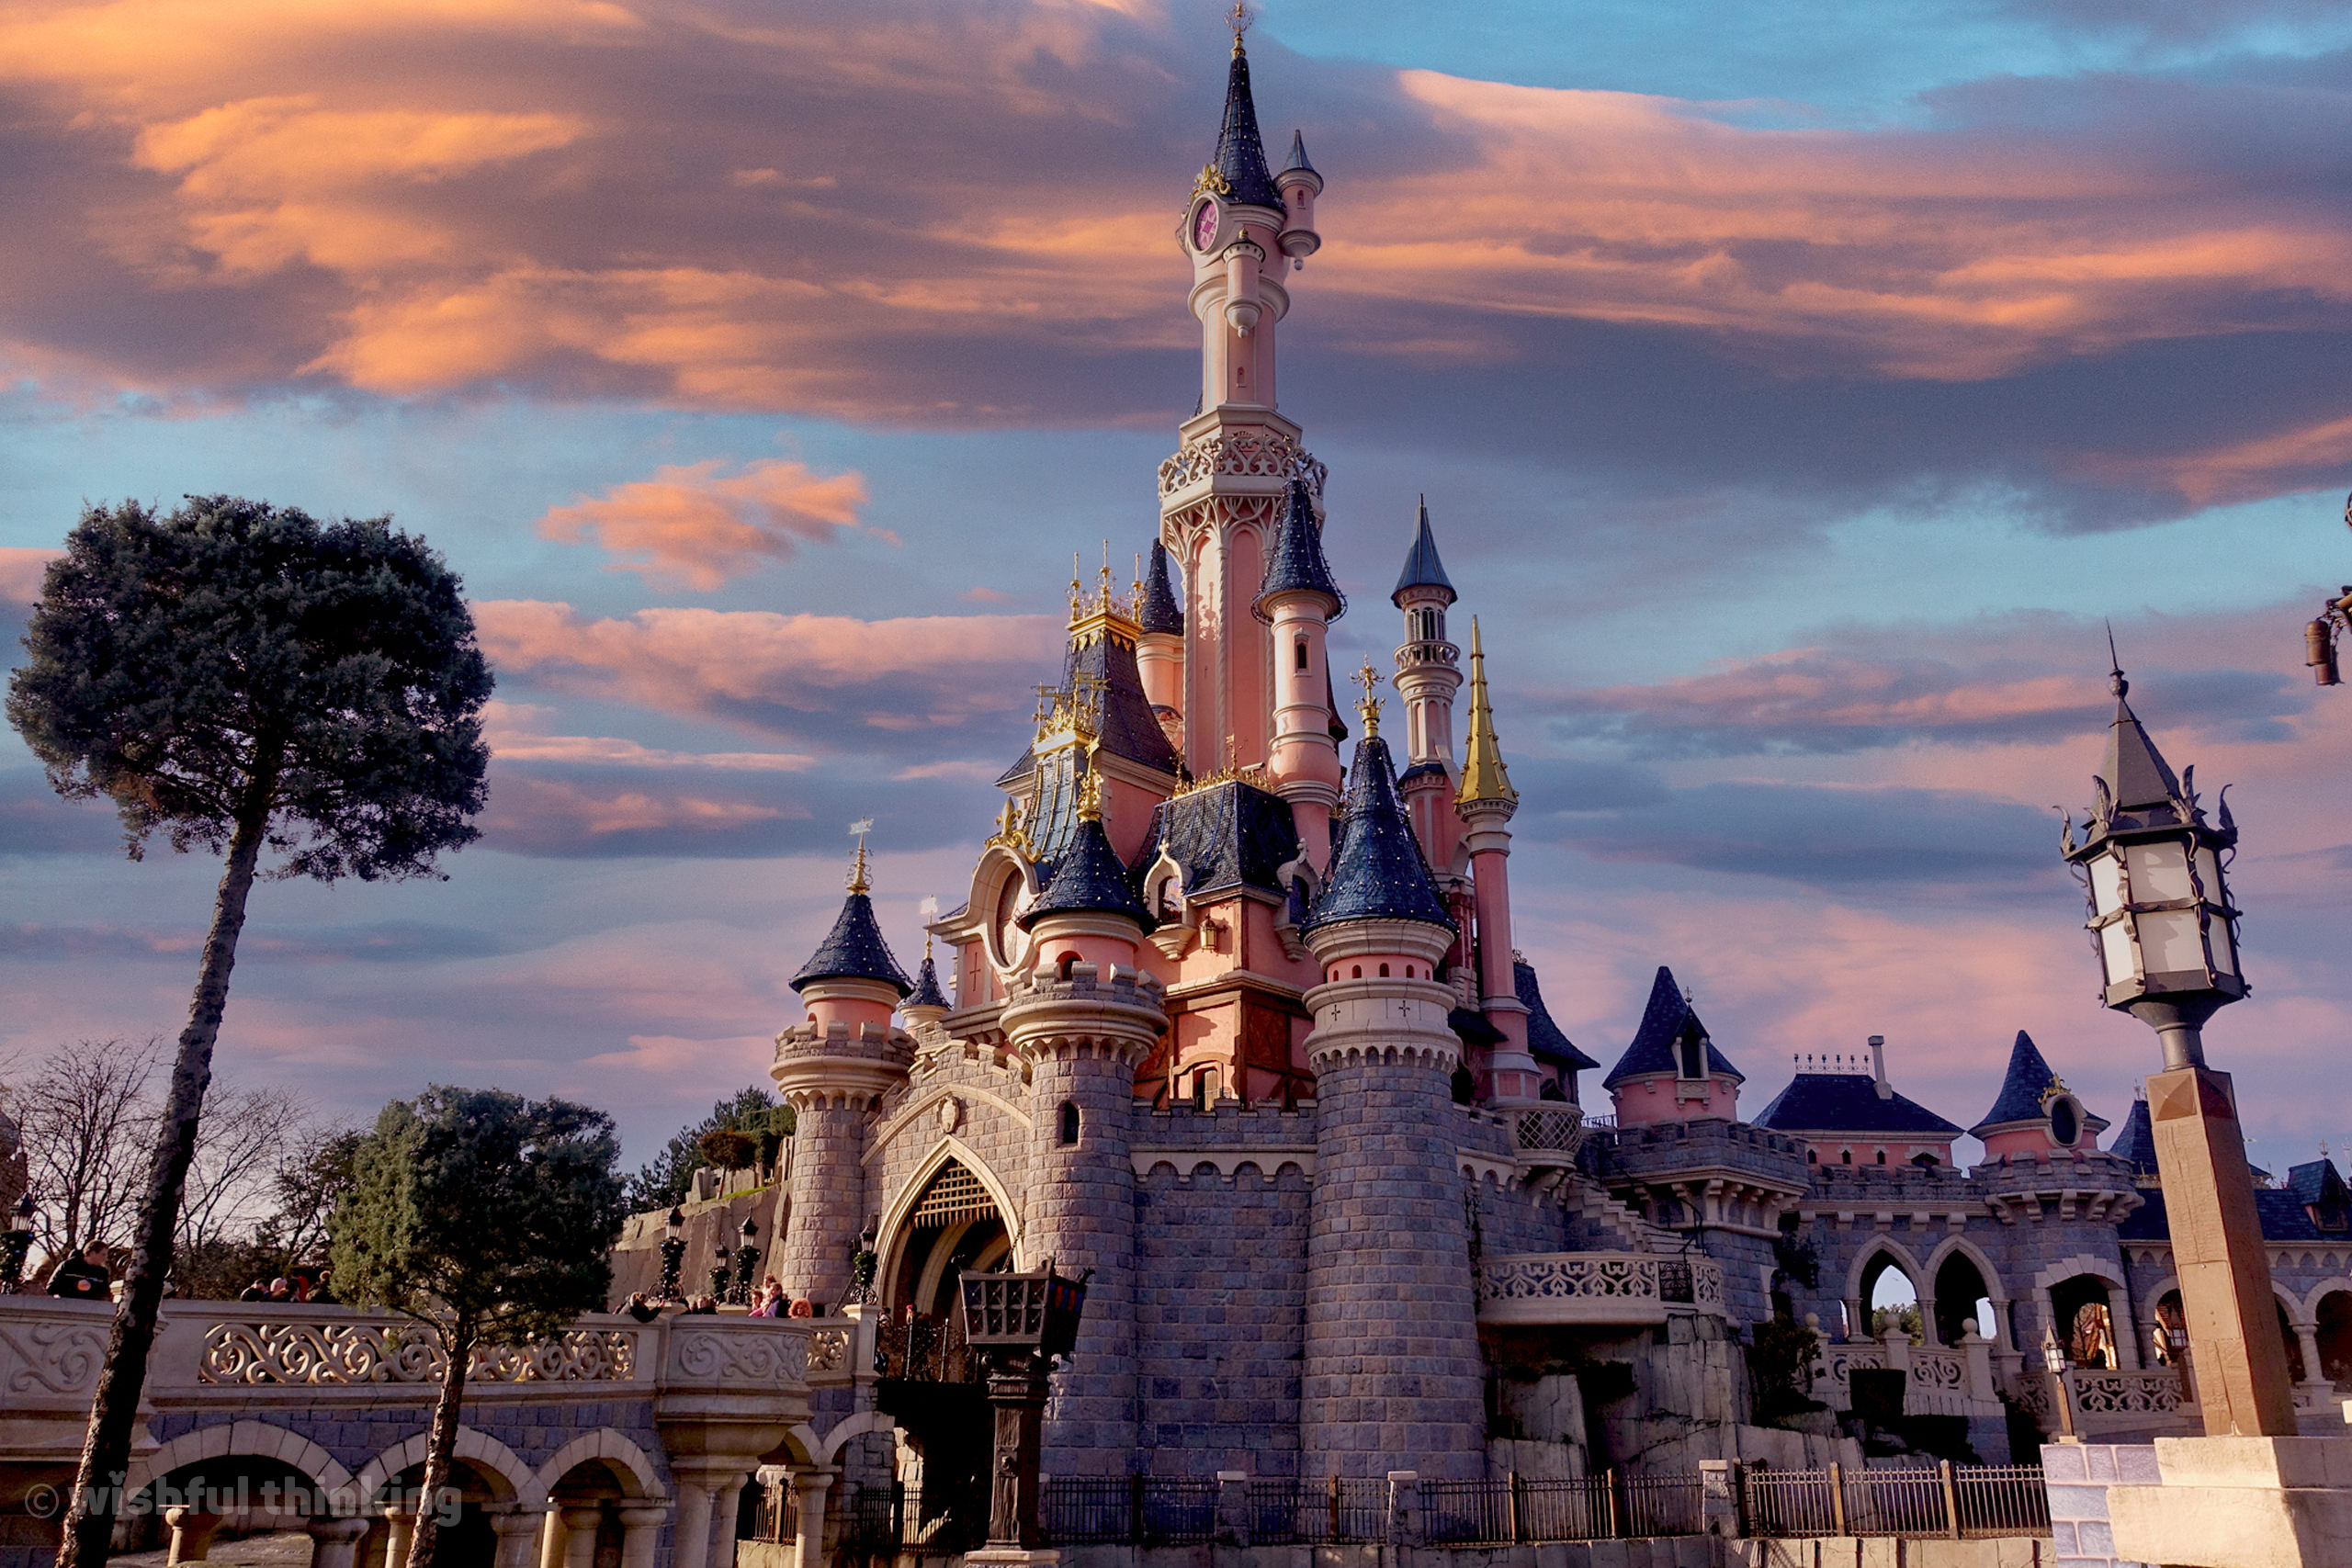 Disneyland Paris's Le Château de la Belle au Bois Dormant at sunset